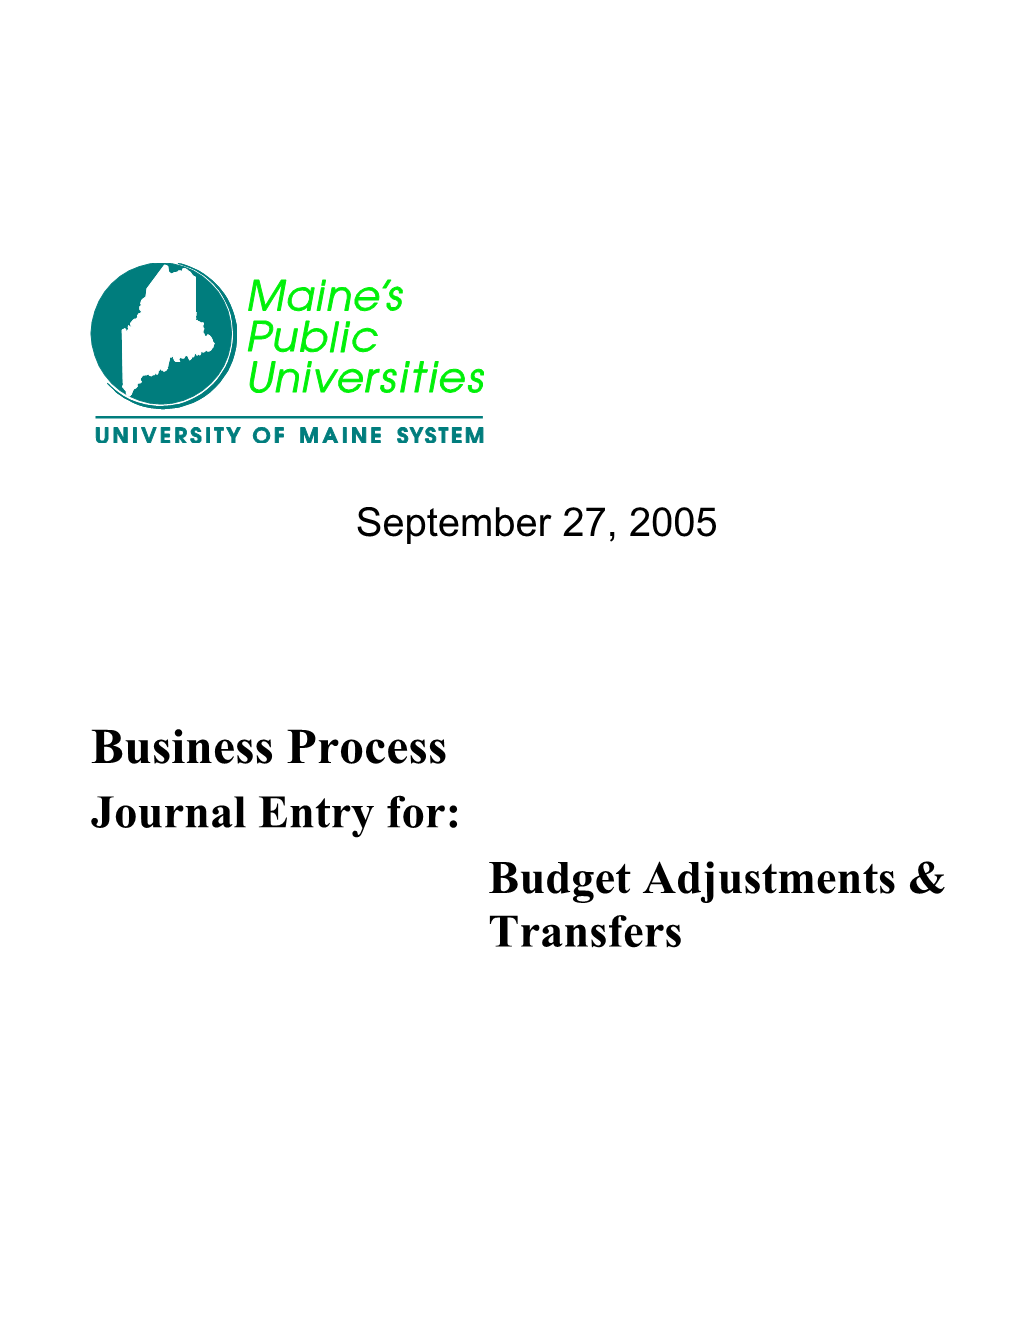 Business Process Procedure Template